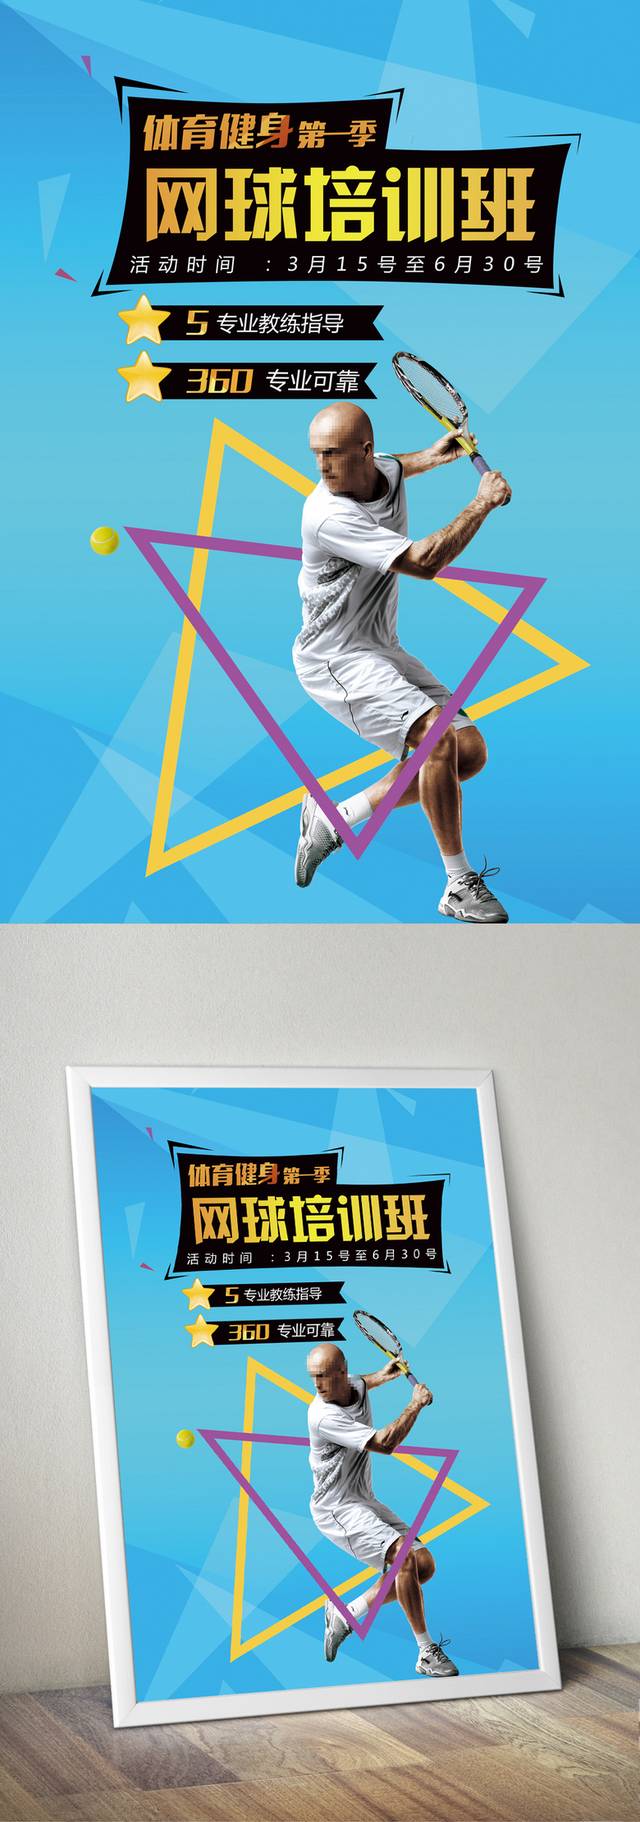 网球馆宣传海报